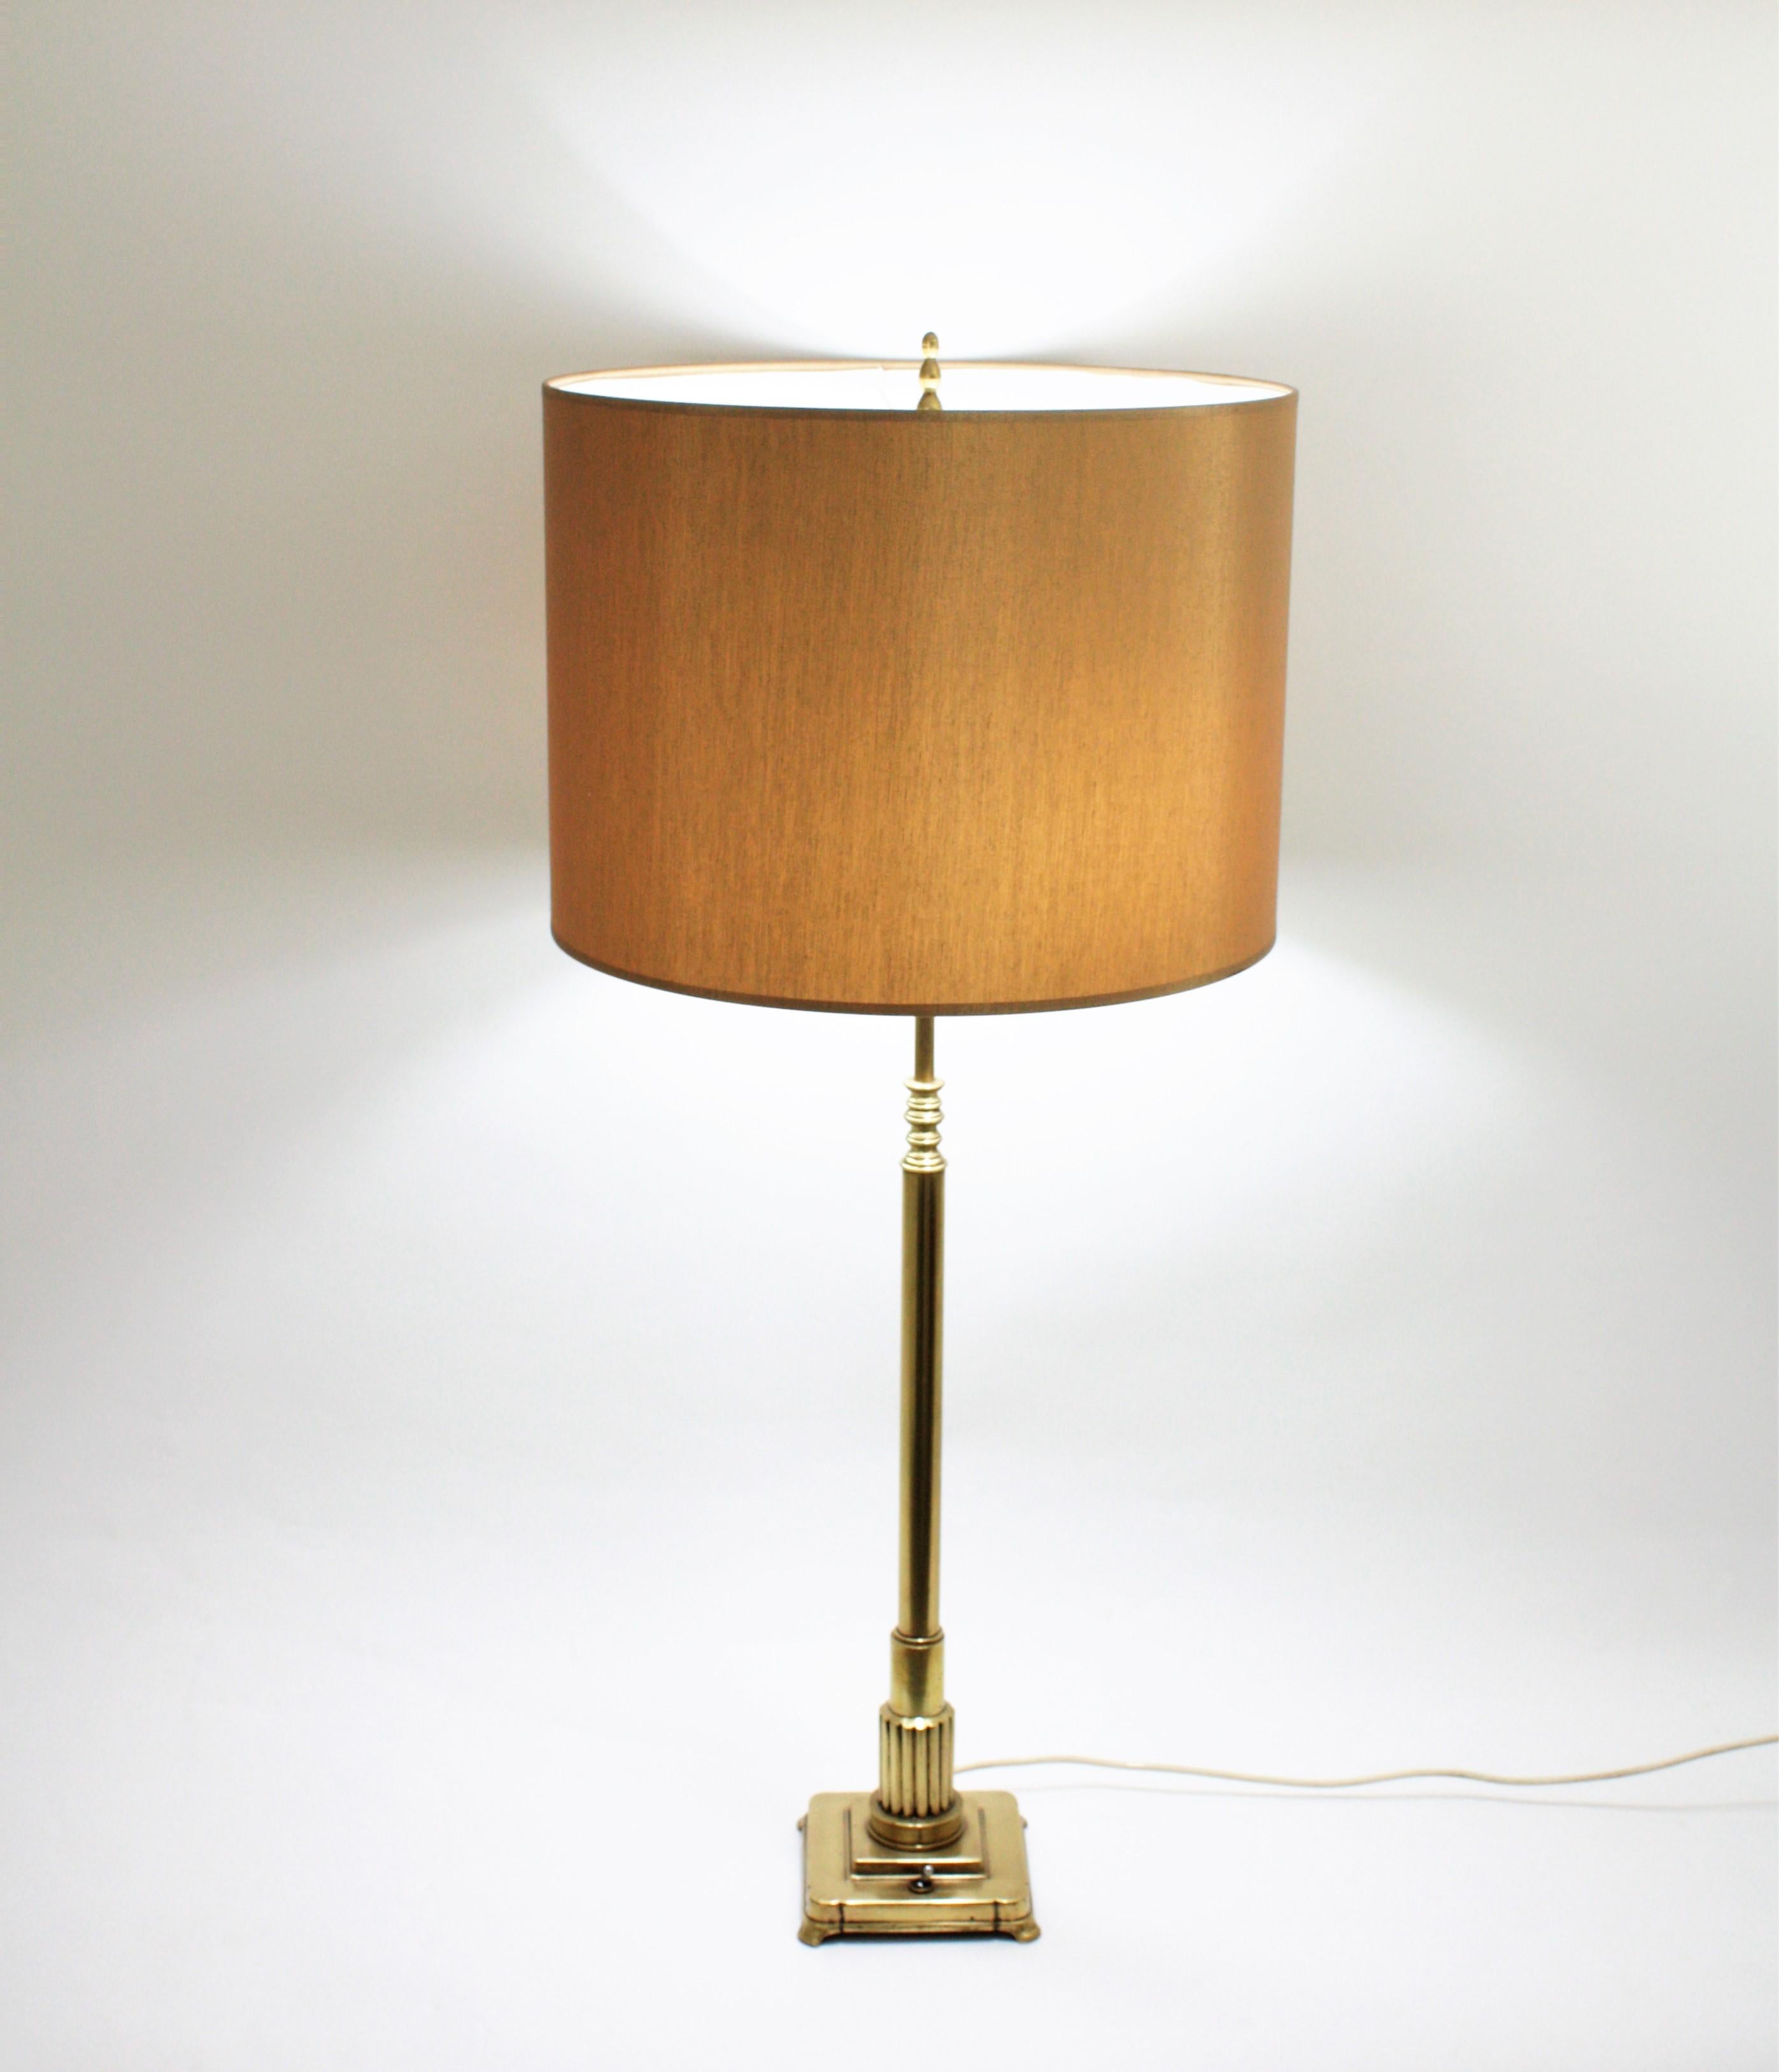 Elégante lampe de table Art déco en laiton poli, France, années 1930.
Cette lampe de table à deux lumières a un corps en forme de colonne reposant sur une base à pieds carrés avec un interrupteur marche/arrêt.
Le laiton a été poli et